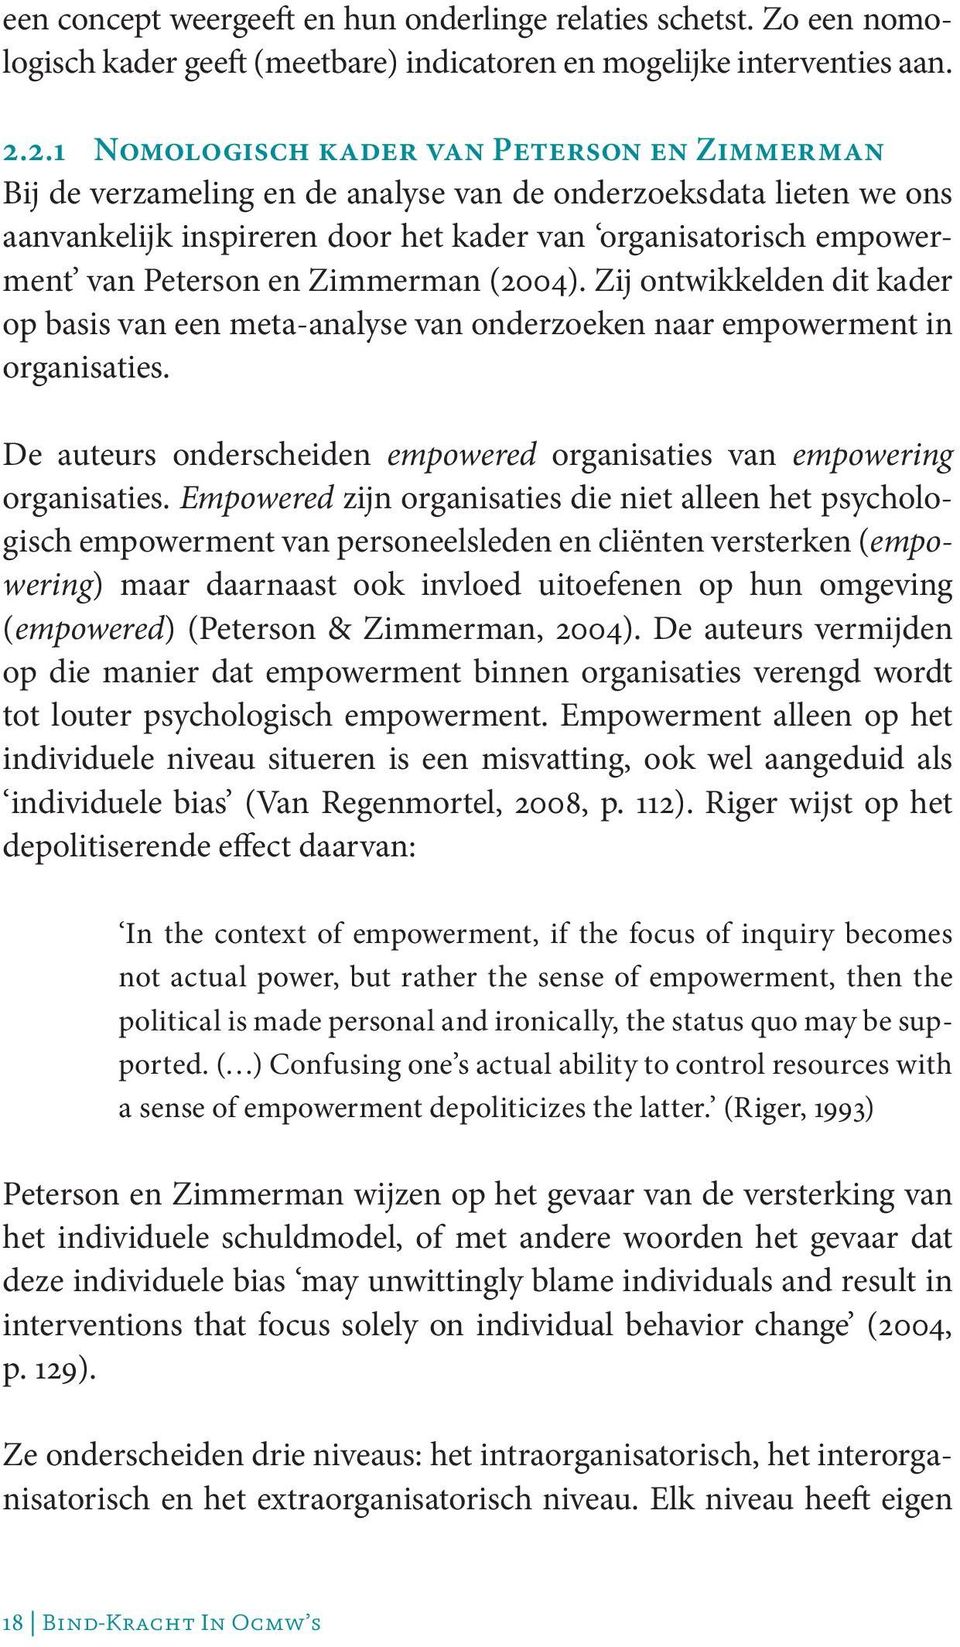 Peterson en Zimmerman (2004). Zij ontwikkelden dit kader op basis van een meta-analyse van onderzoeken naar empowerment in organisaties.